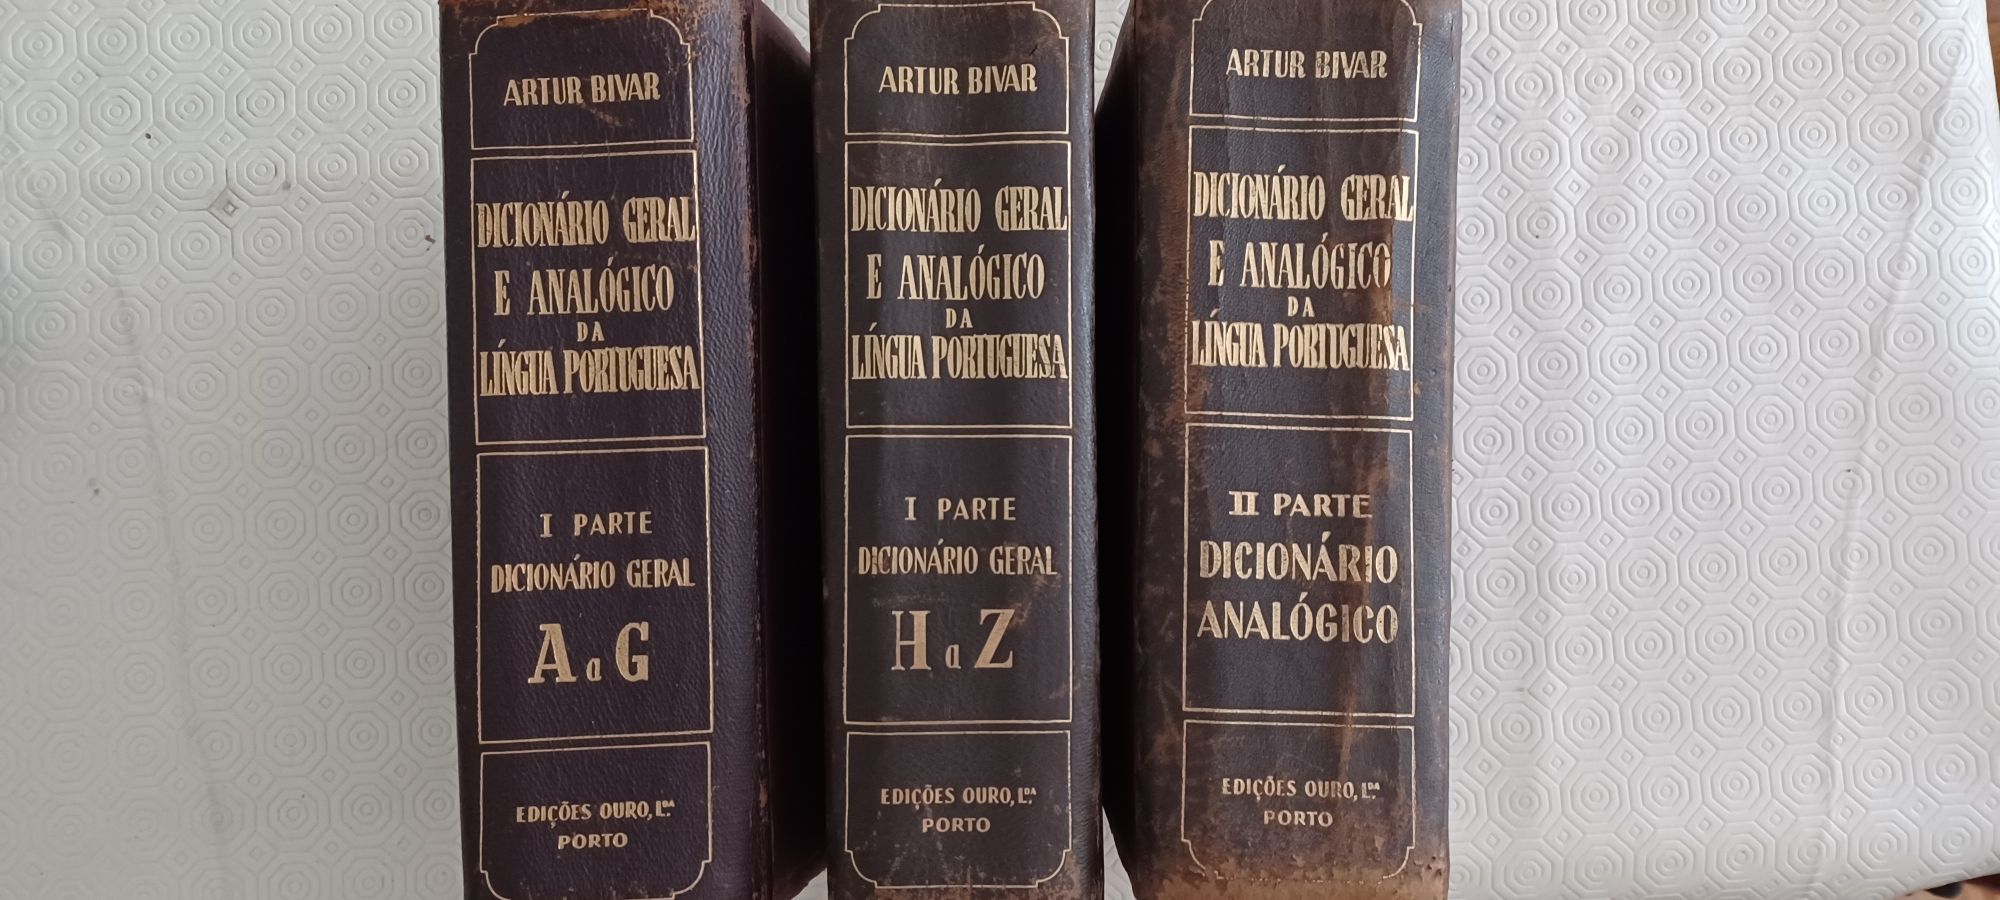 Dicionário Geral E Analógico Da Língua Portuguesa